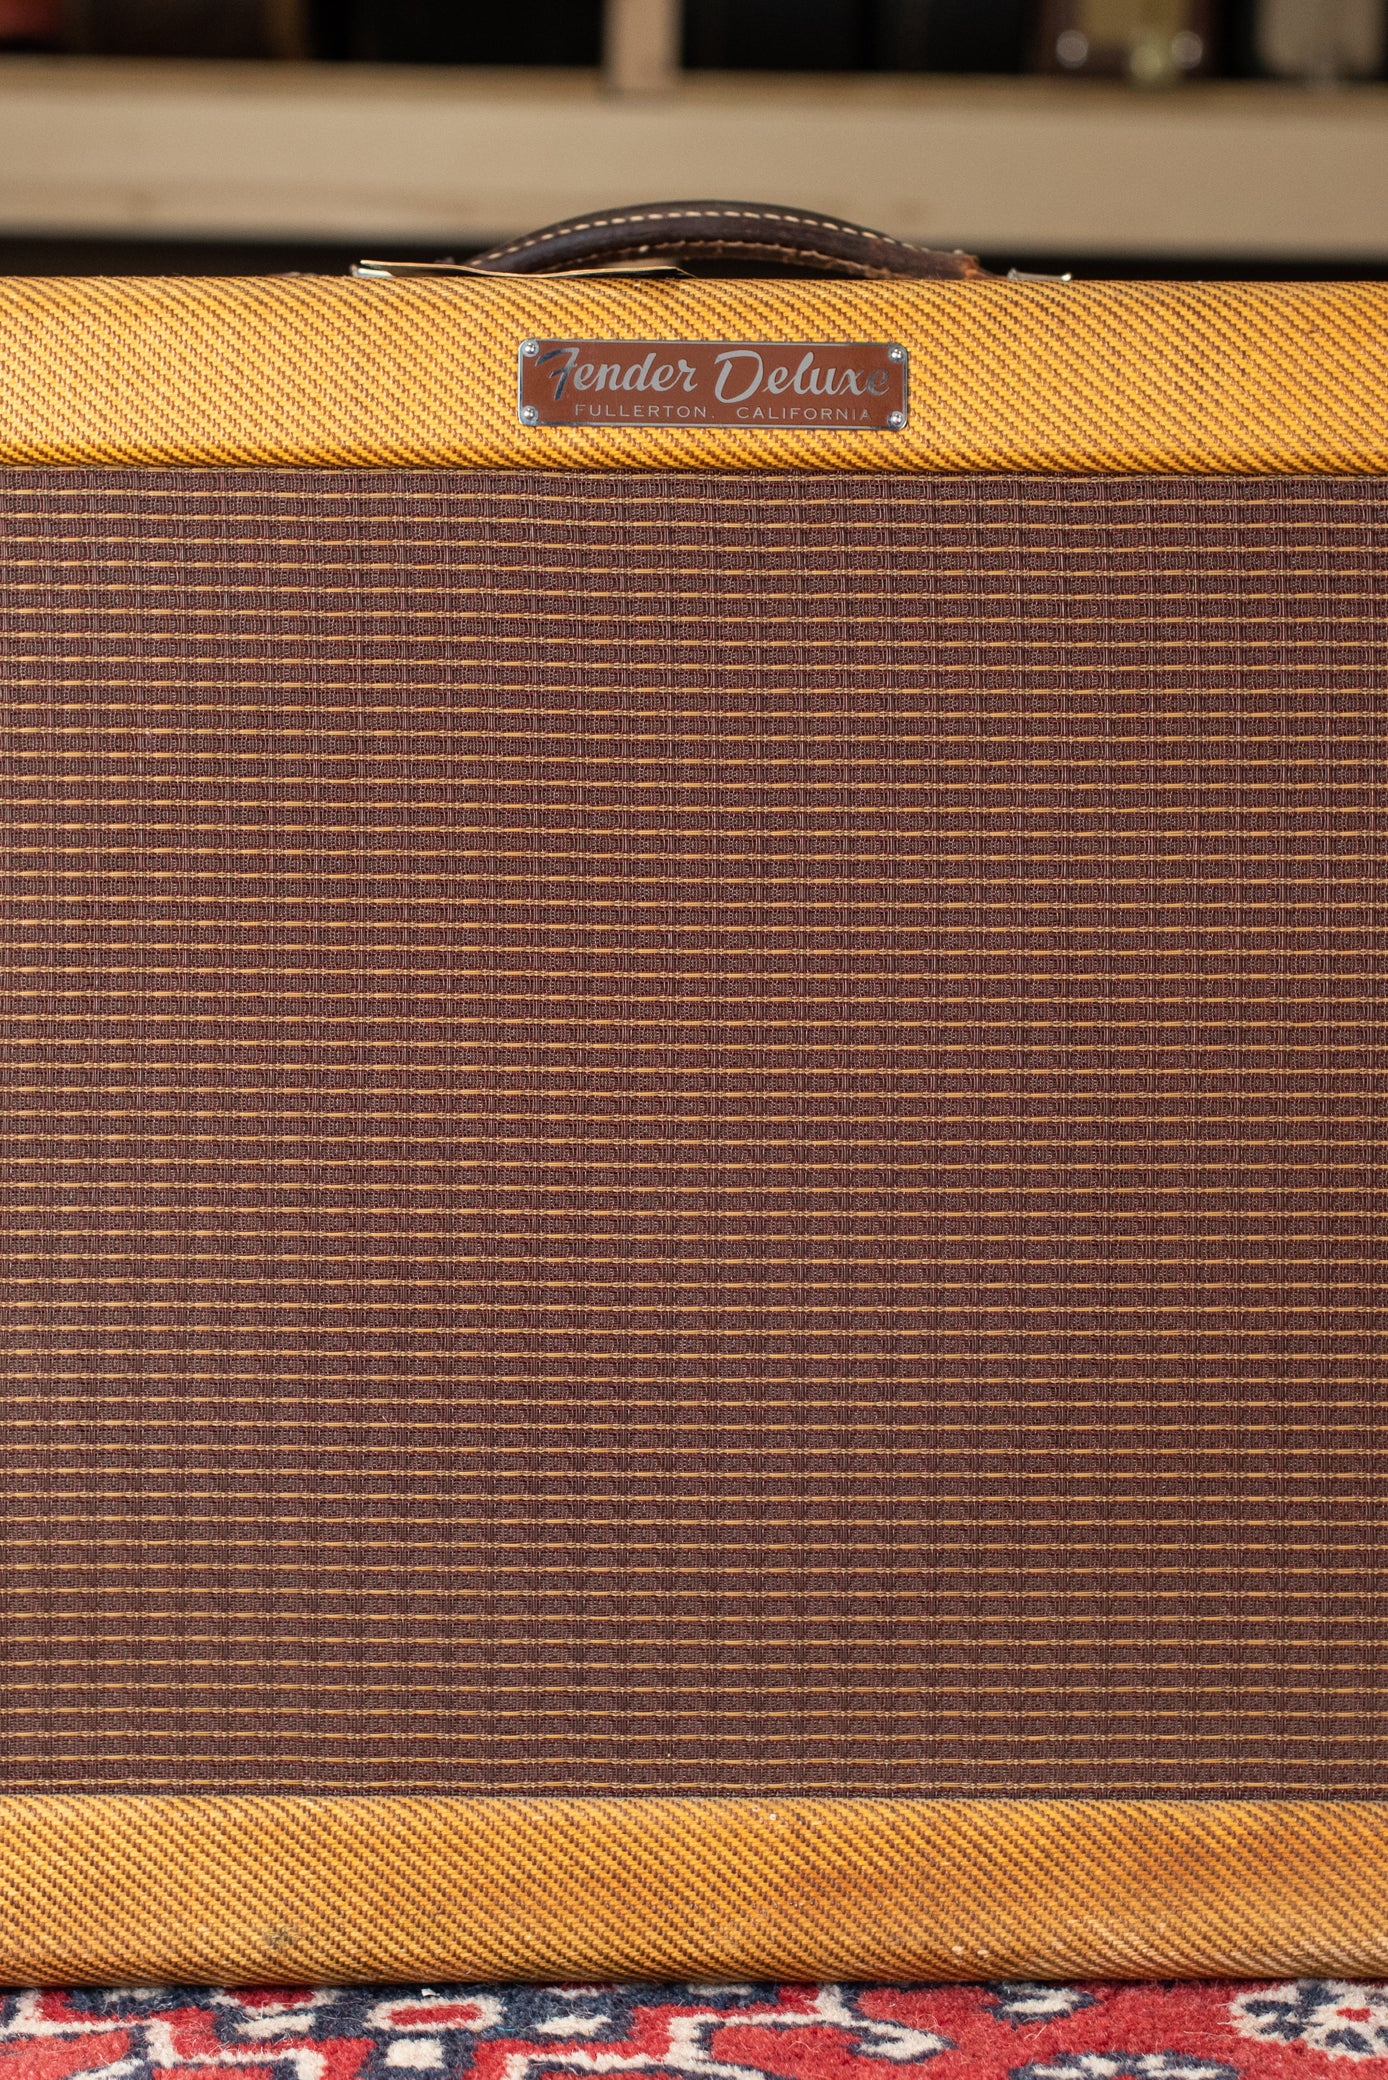 1958 Fender Deluxe guitar Amp 5E3 